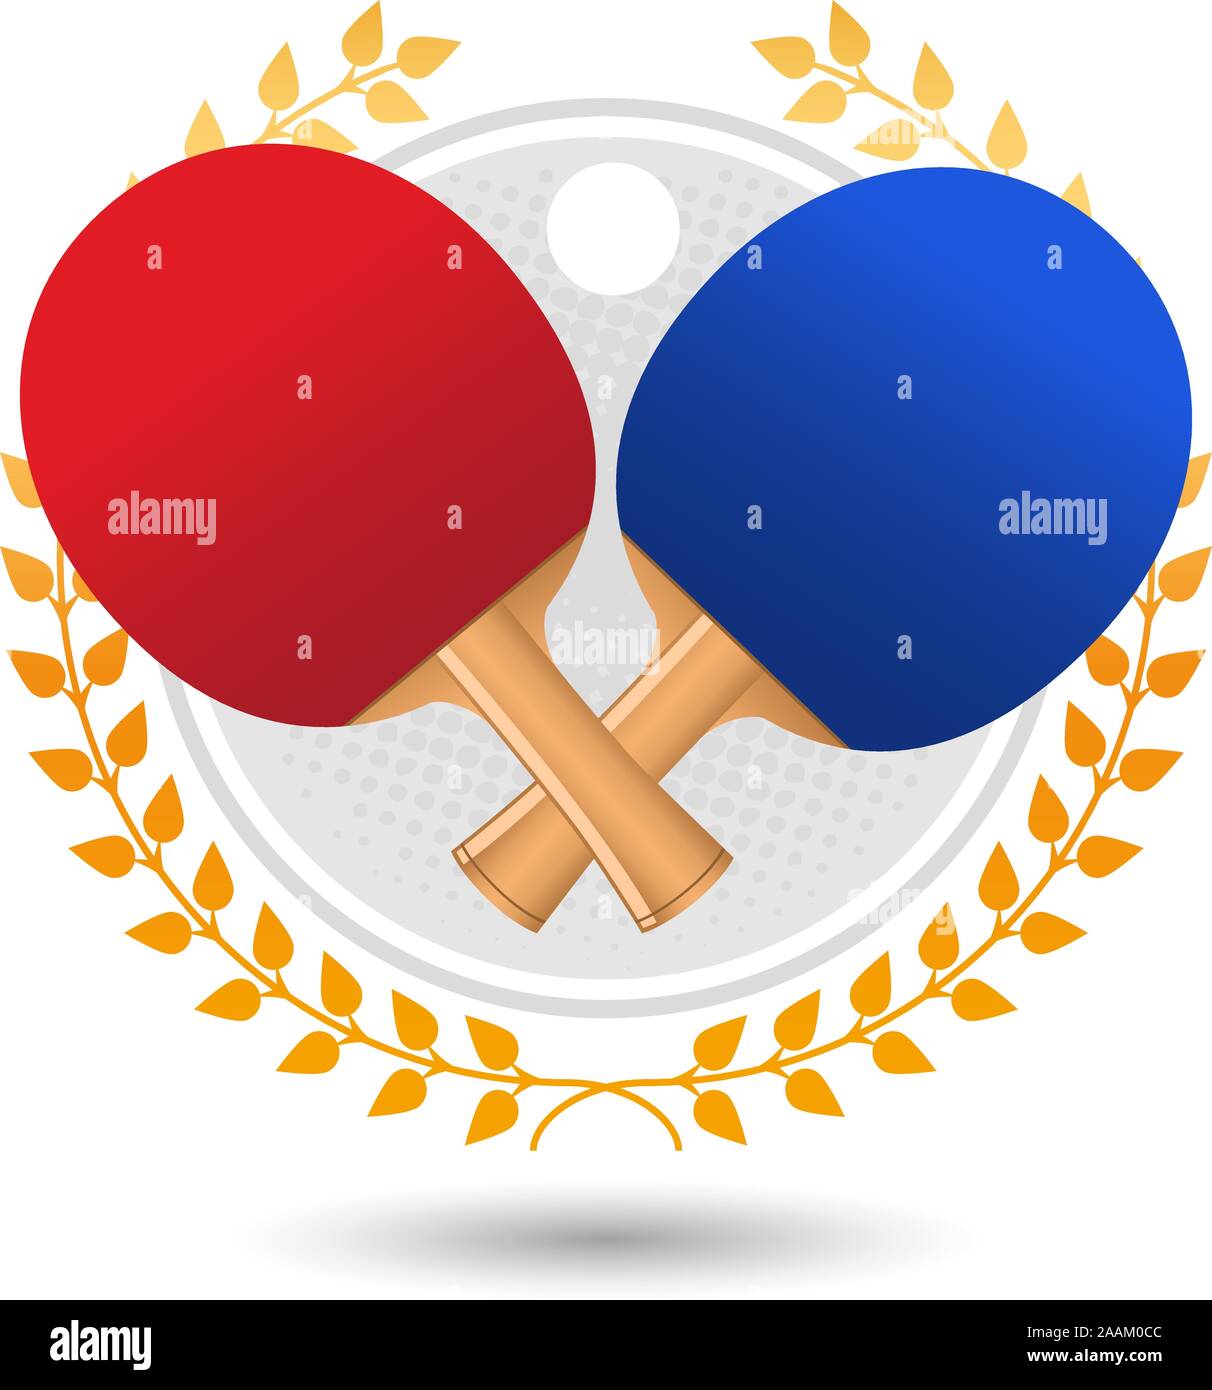 Ping pong corona di alloro con il rosso e il blu racchette e la sfera bianca illustrazione vettoriale. Illustrazione Vettoriale